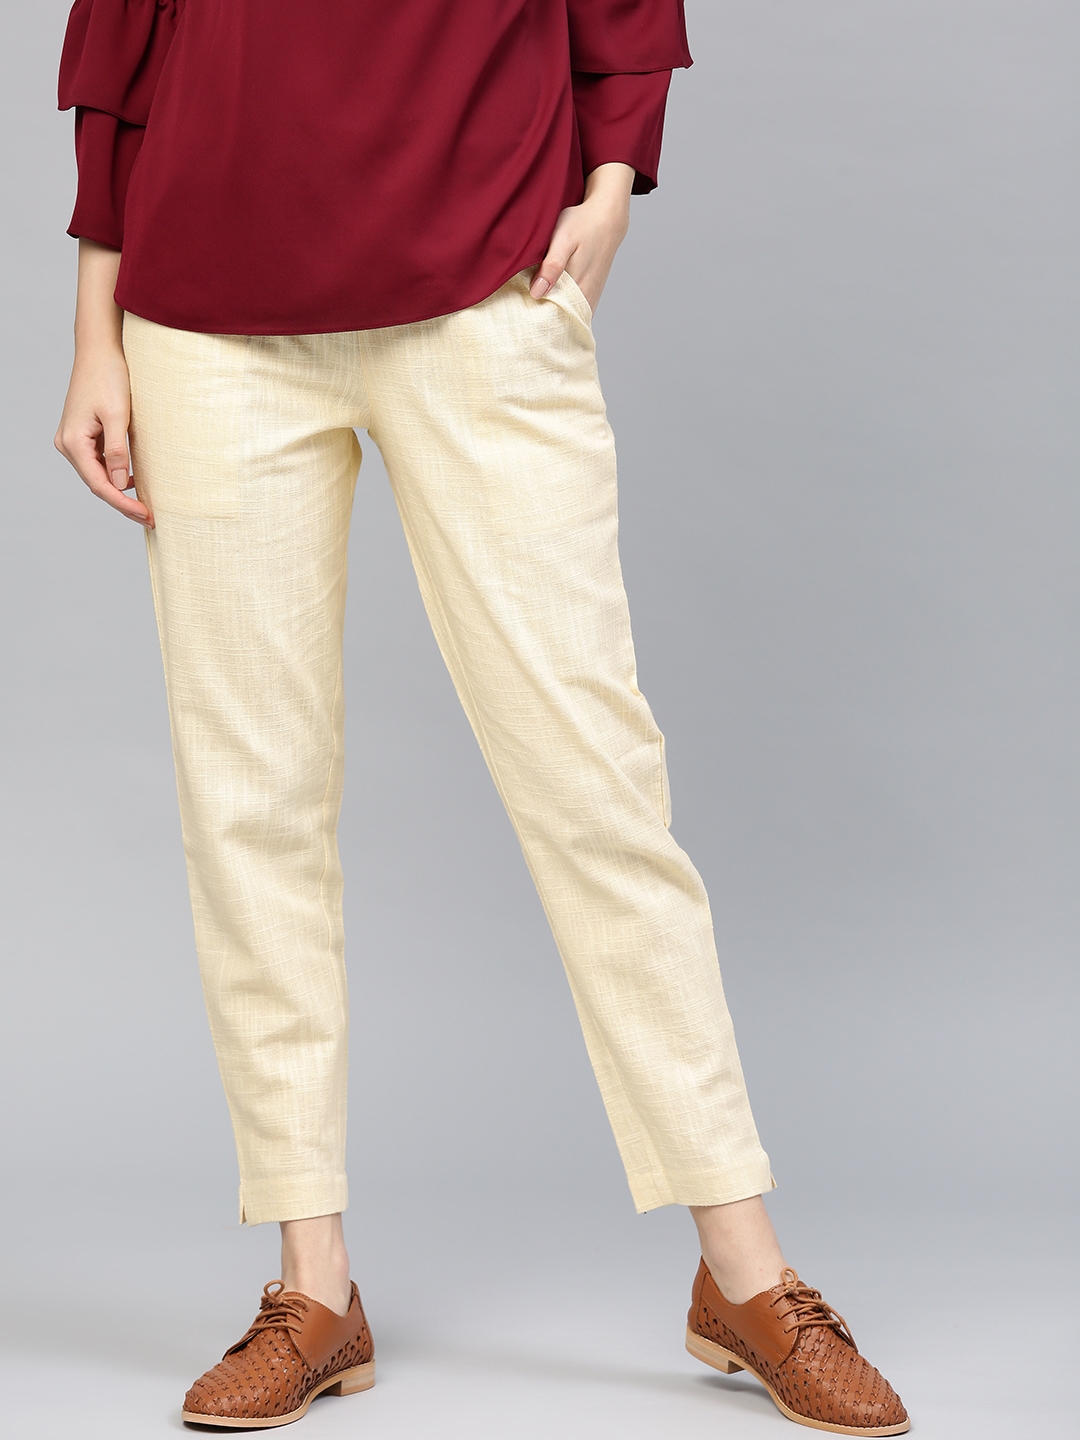 Jeans & Pants | Its Cream Colour Pants For Men | Freeup-hangkhonggiare.com.vn